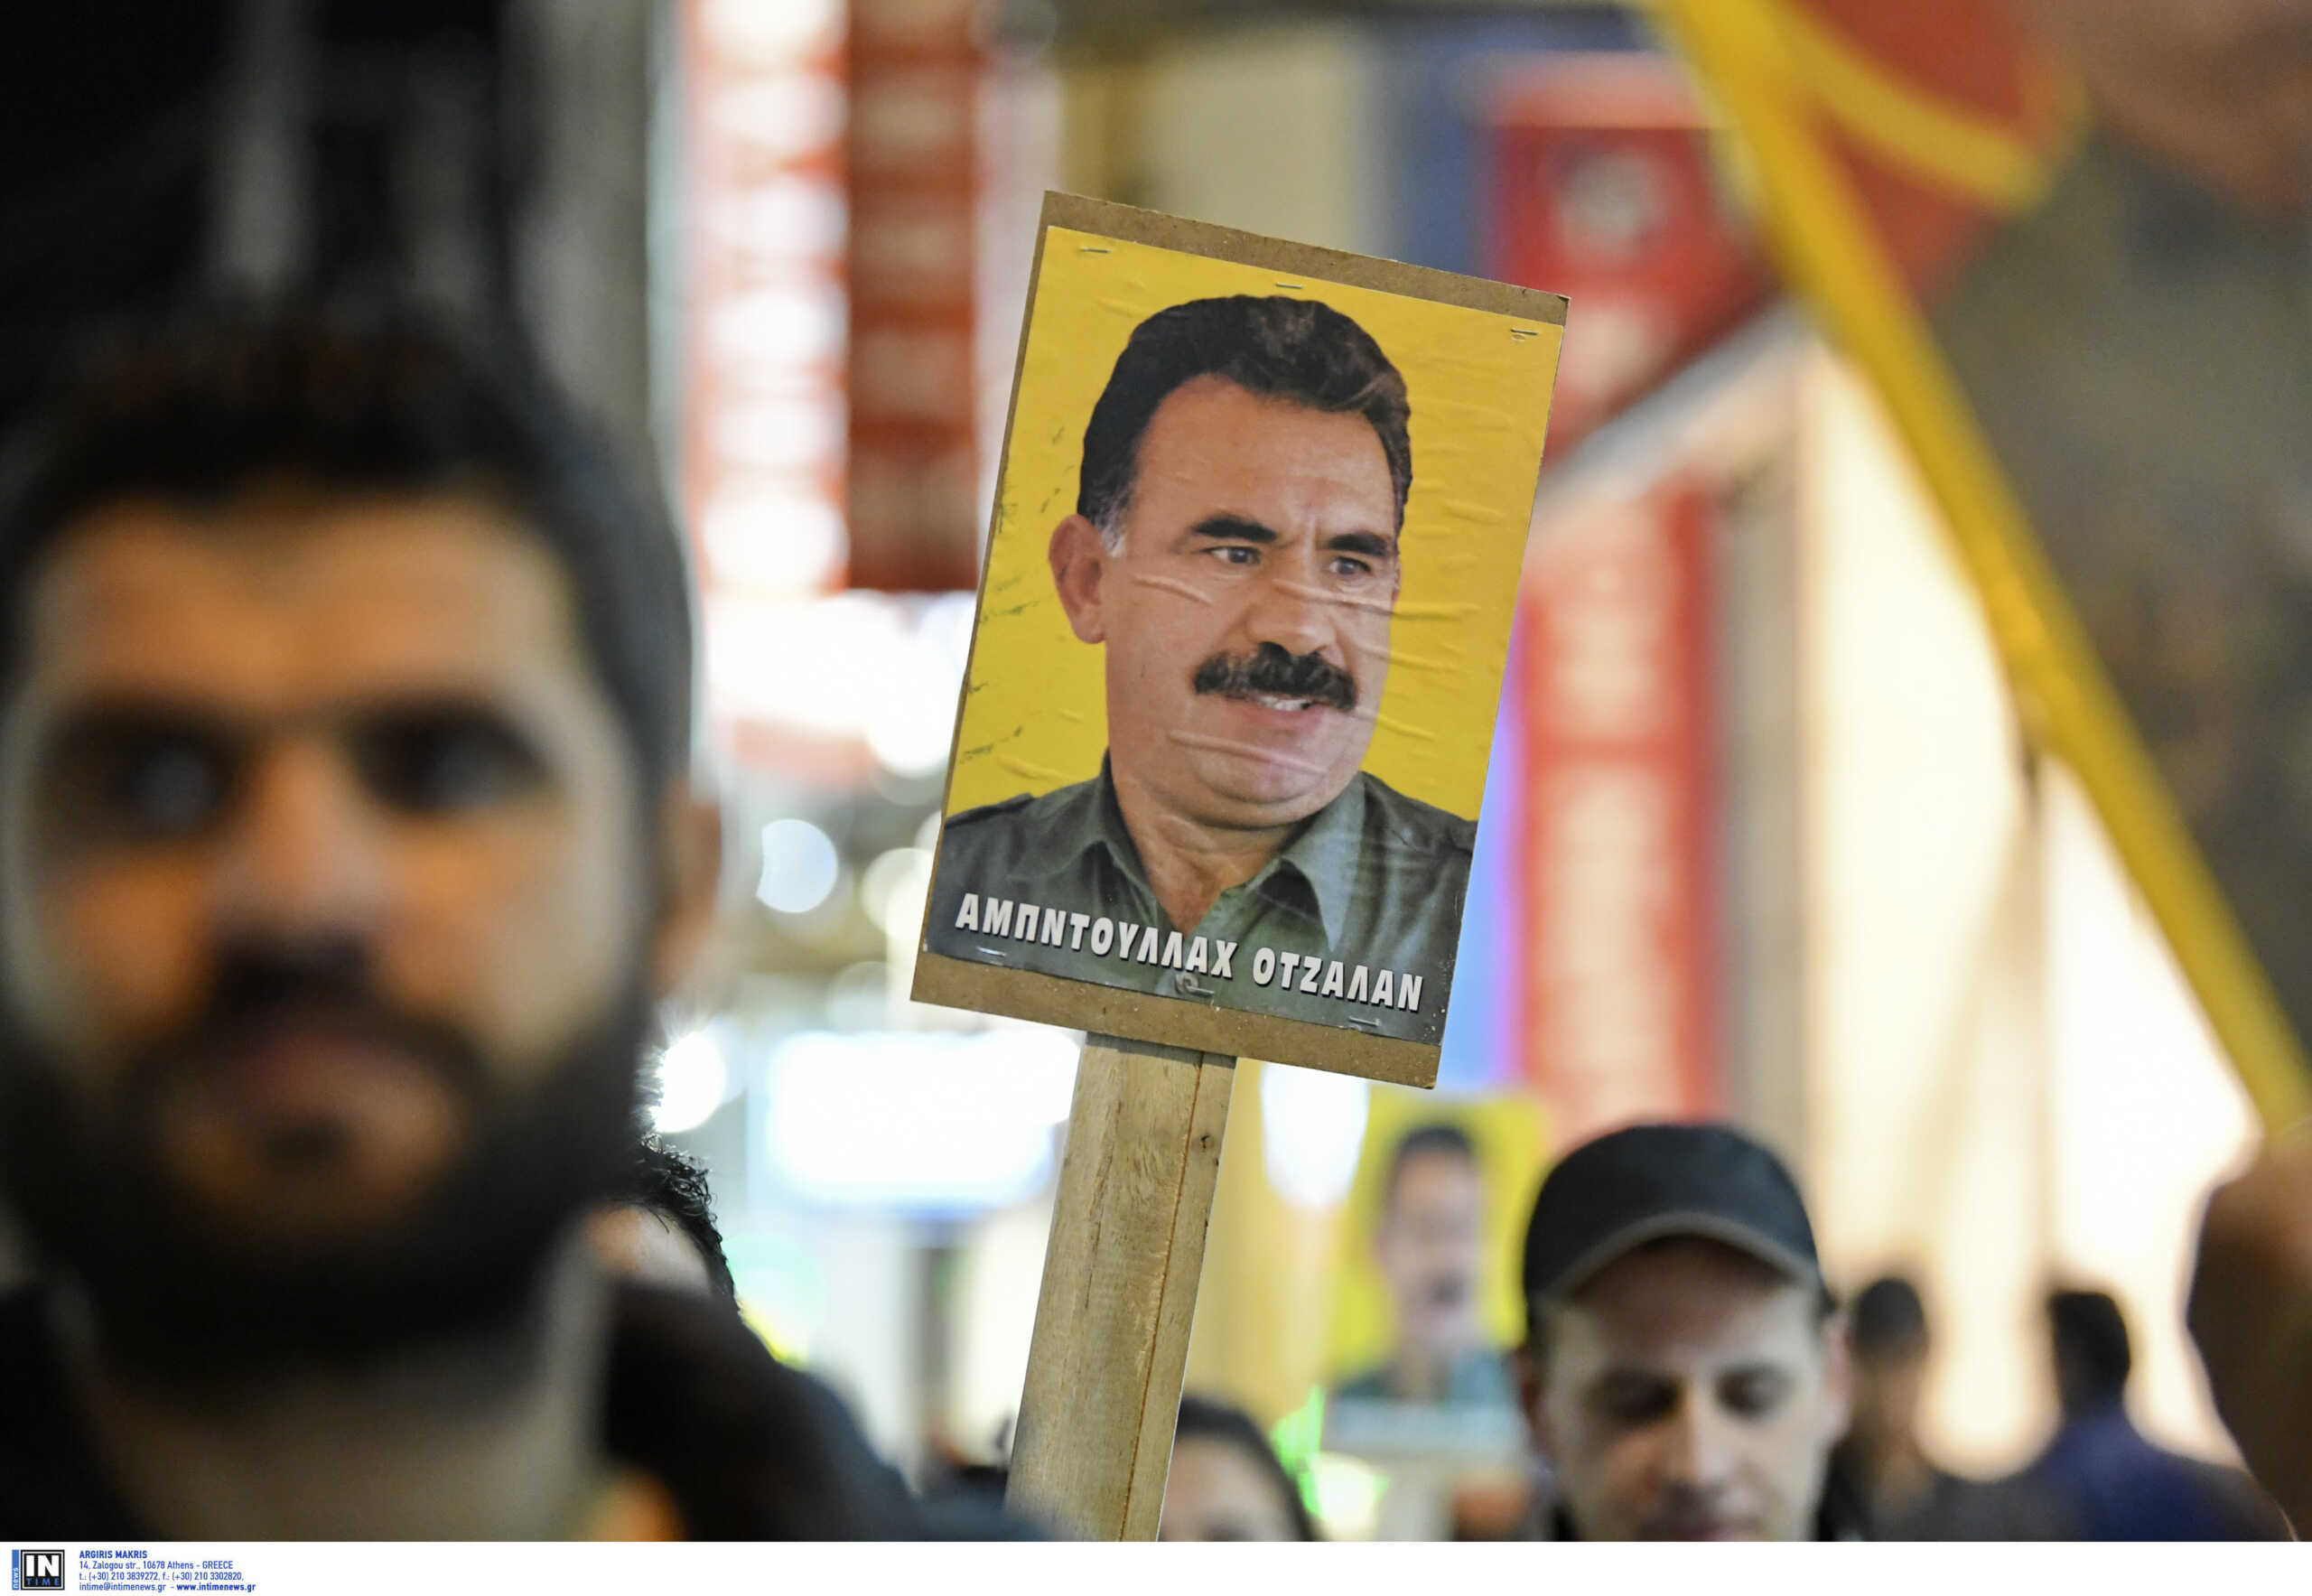 Θεόδωρος Πάγκαλος: Η υπόθεση Οτσαλάν και το θρίλερ της απαγωγής του ηγέτη των Κούρδων του PKK